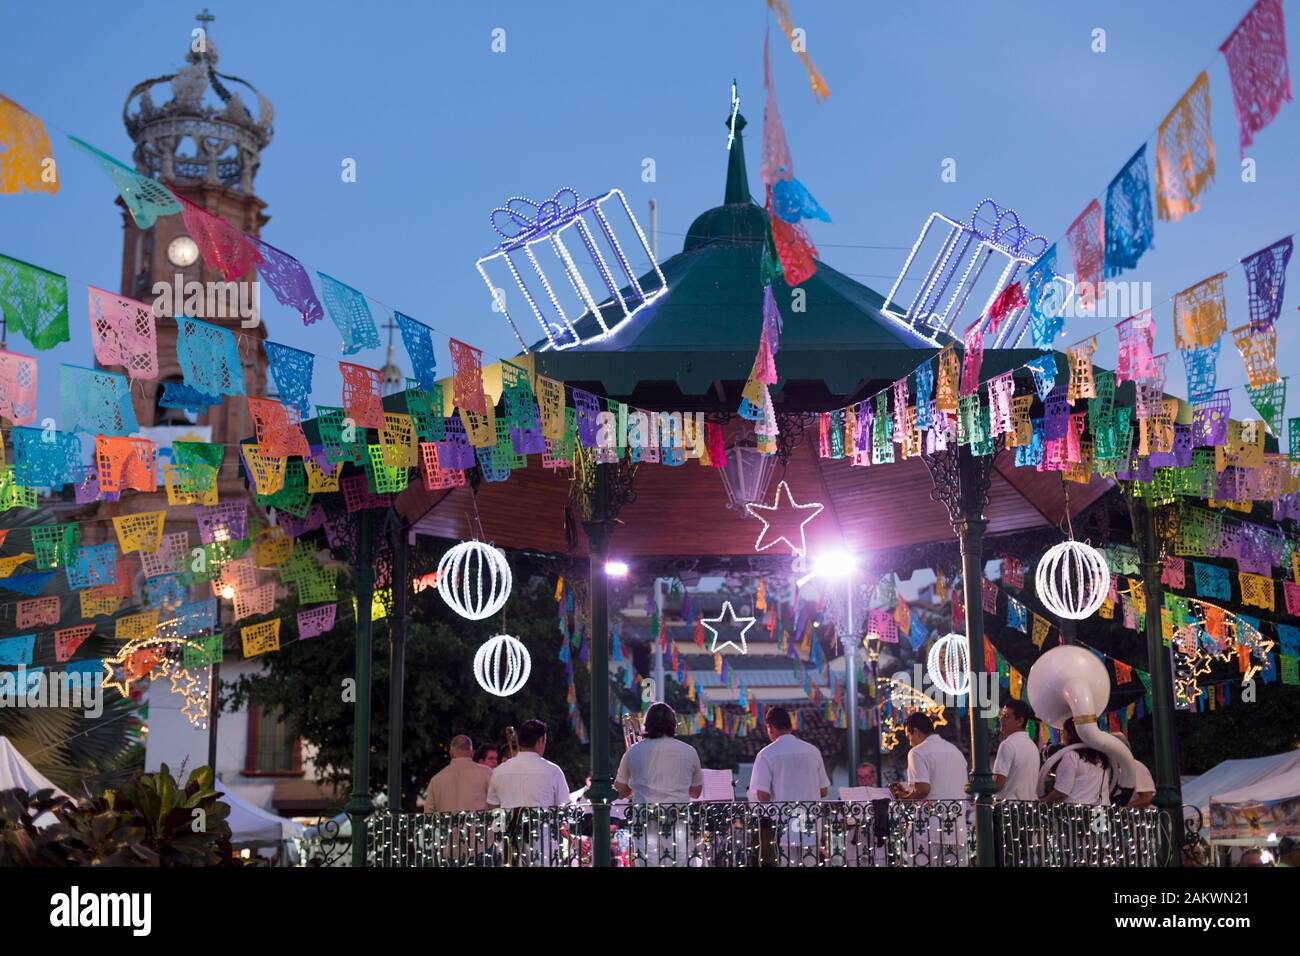 Mexiko, Puerto Vallarta, Jalisco, musikpavillon für ein Festival mit Band und Personen eingerichtet Stockfoto